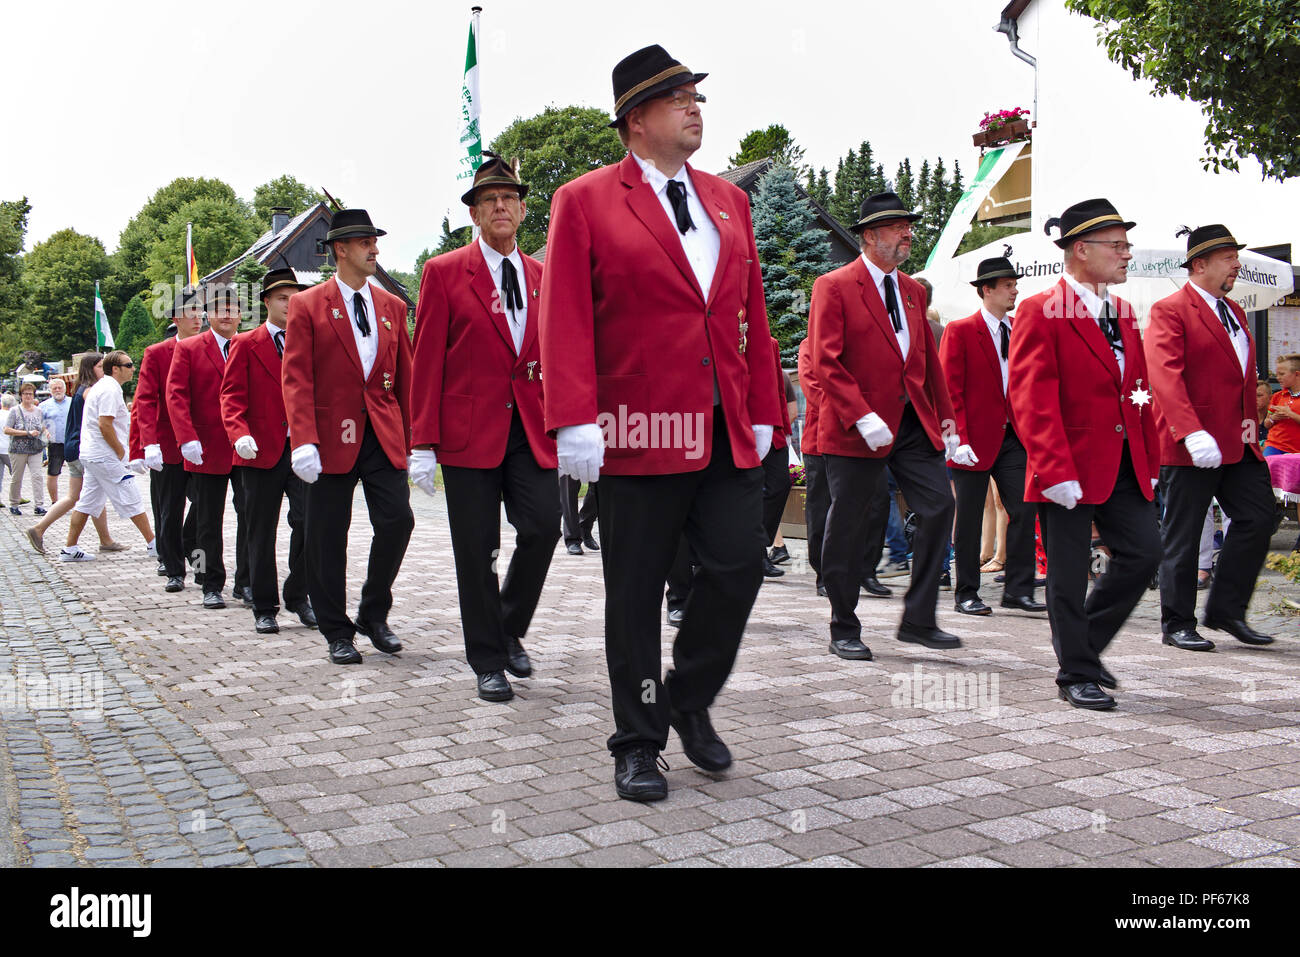 Usseln, Germania - Luglio 29th, 2018 - fucile i membri del club che sfilano in loro tradizionale divisa rossa alla tiratori giusto Foto Stock